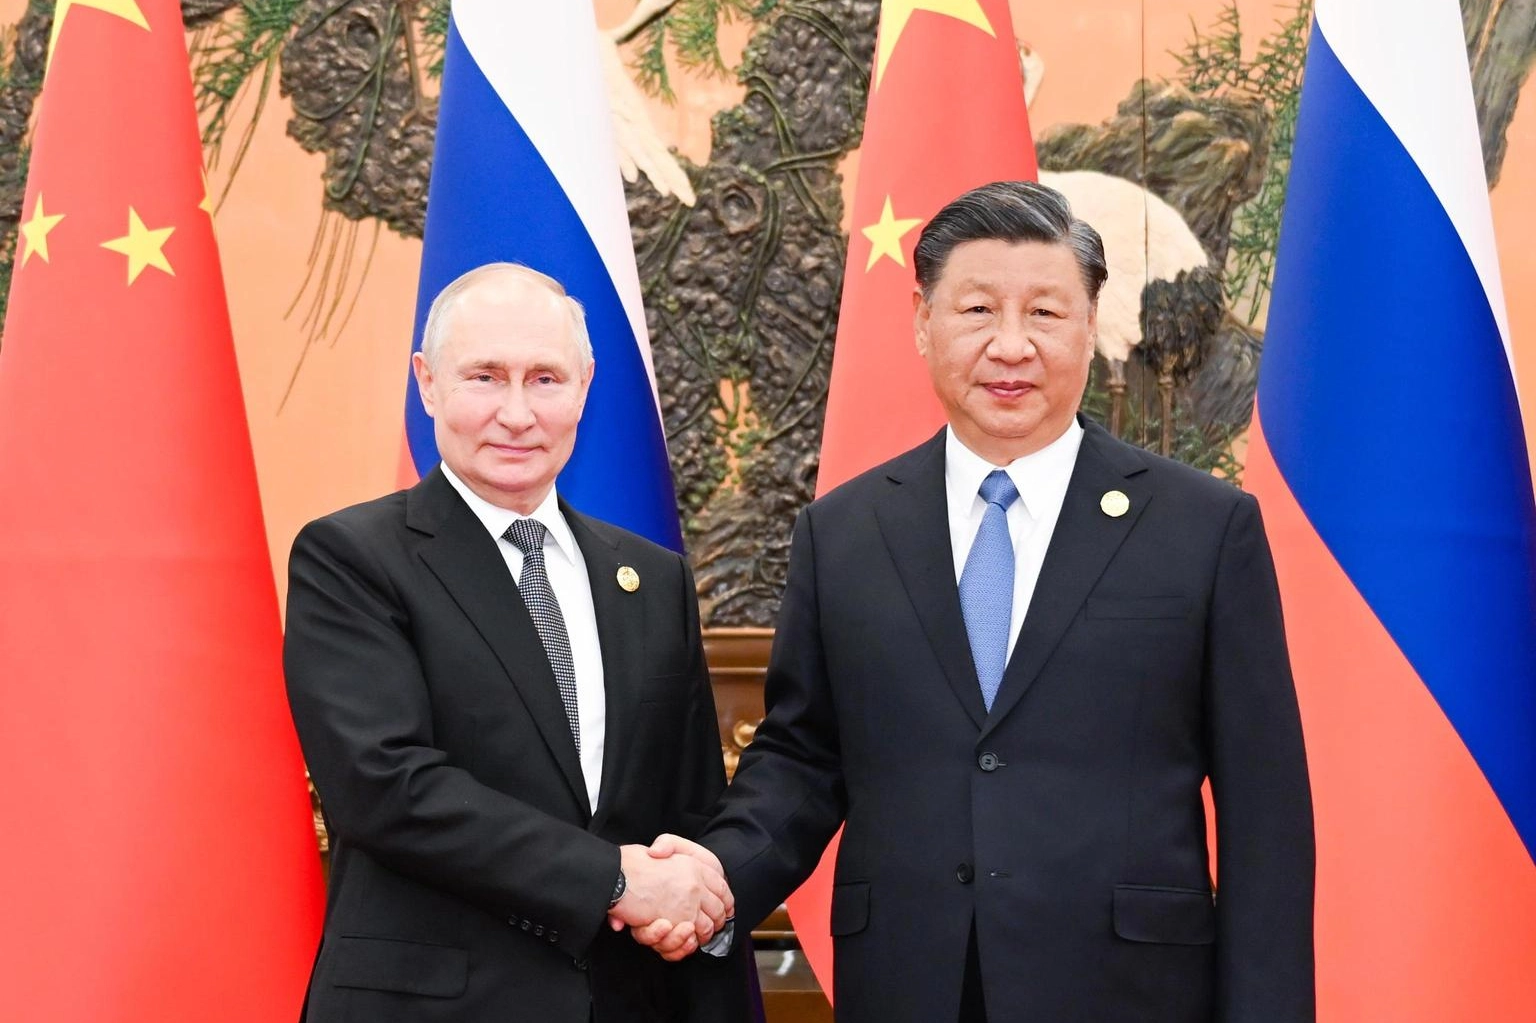 La Cina si congratula con Putin per la vittoria elettorale